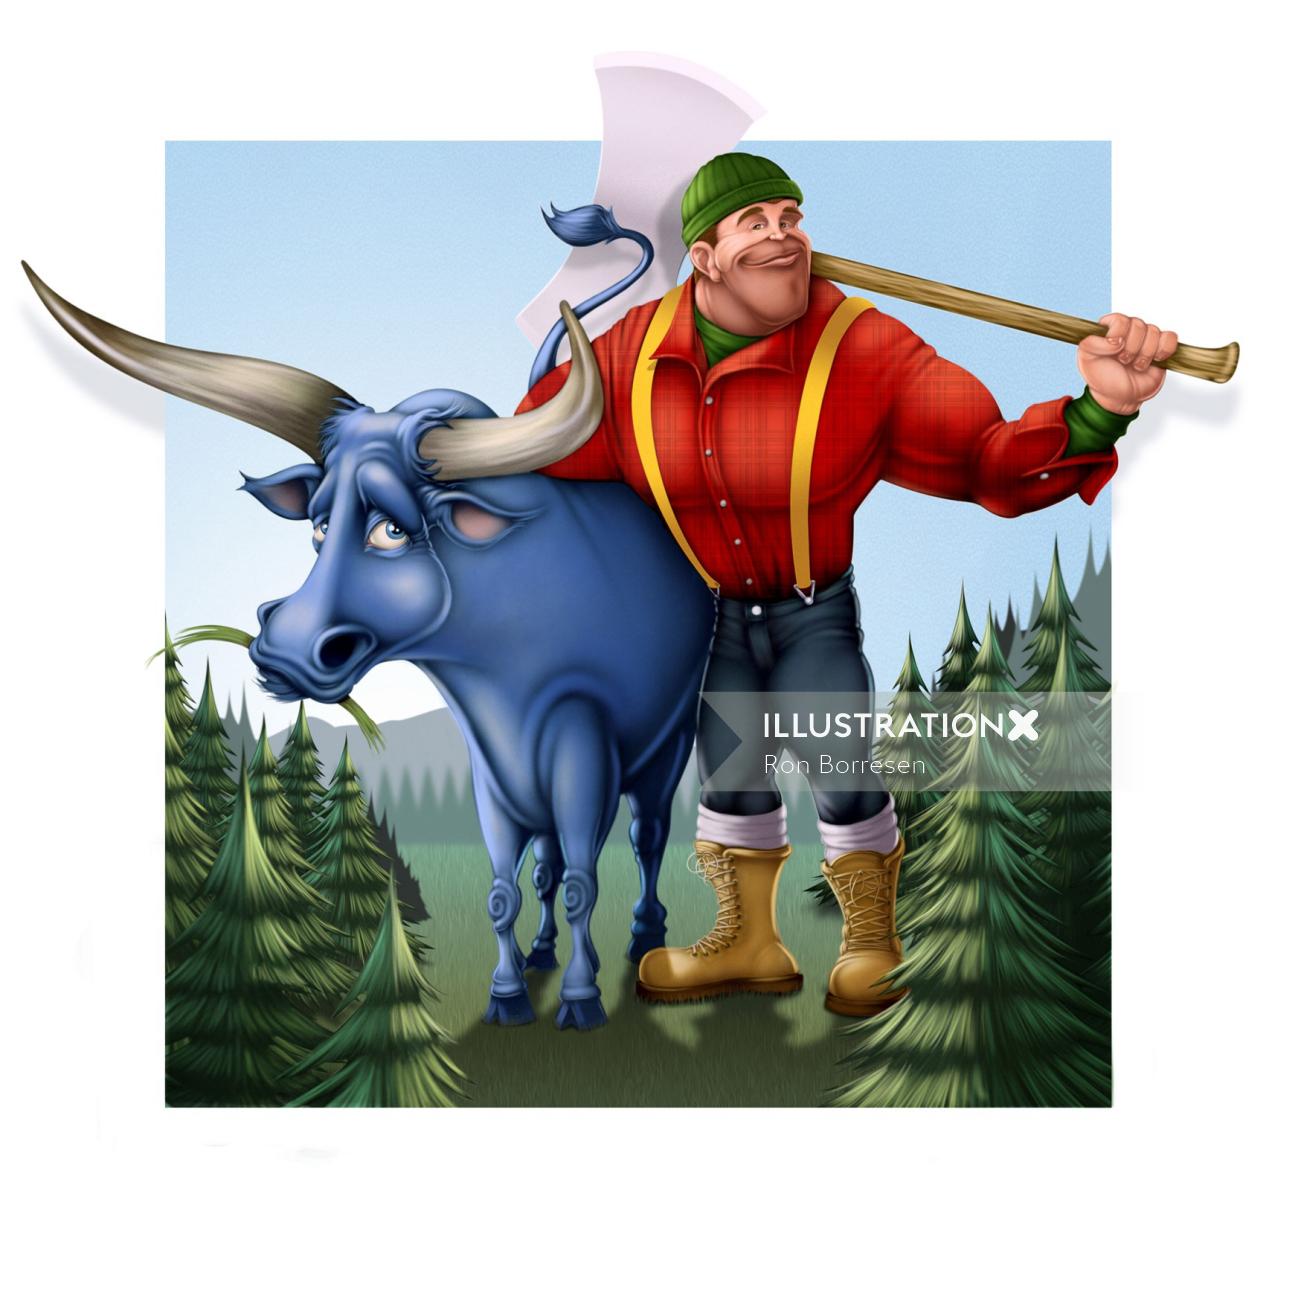 Arte gráfico de Paul Bunyan y Babe the big blue ox